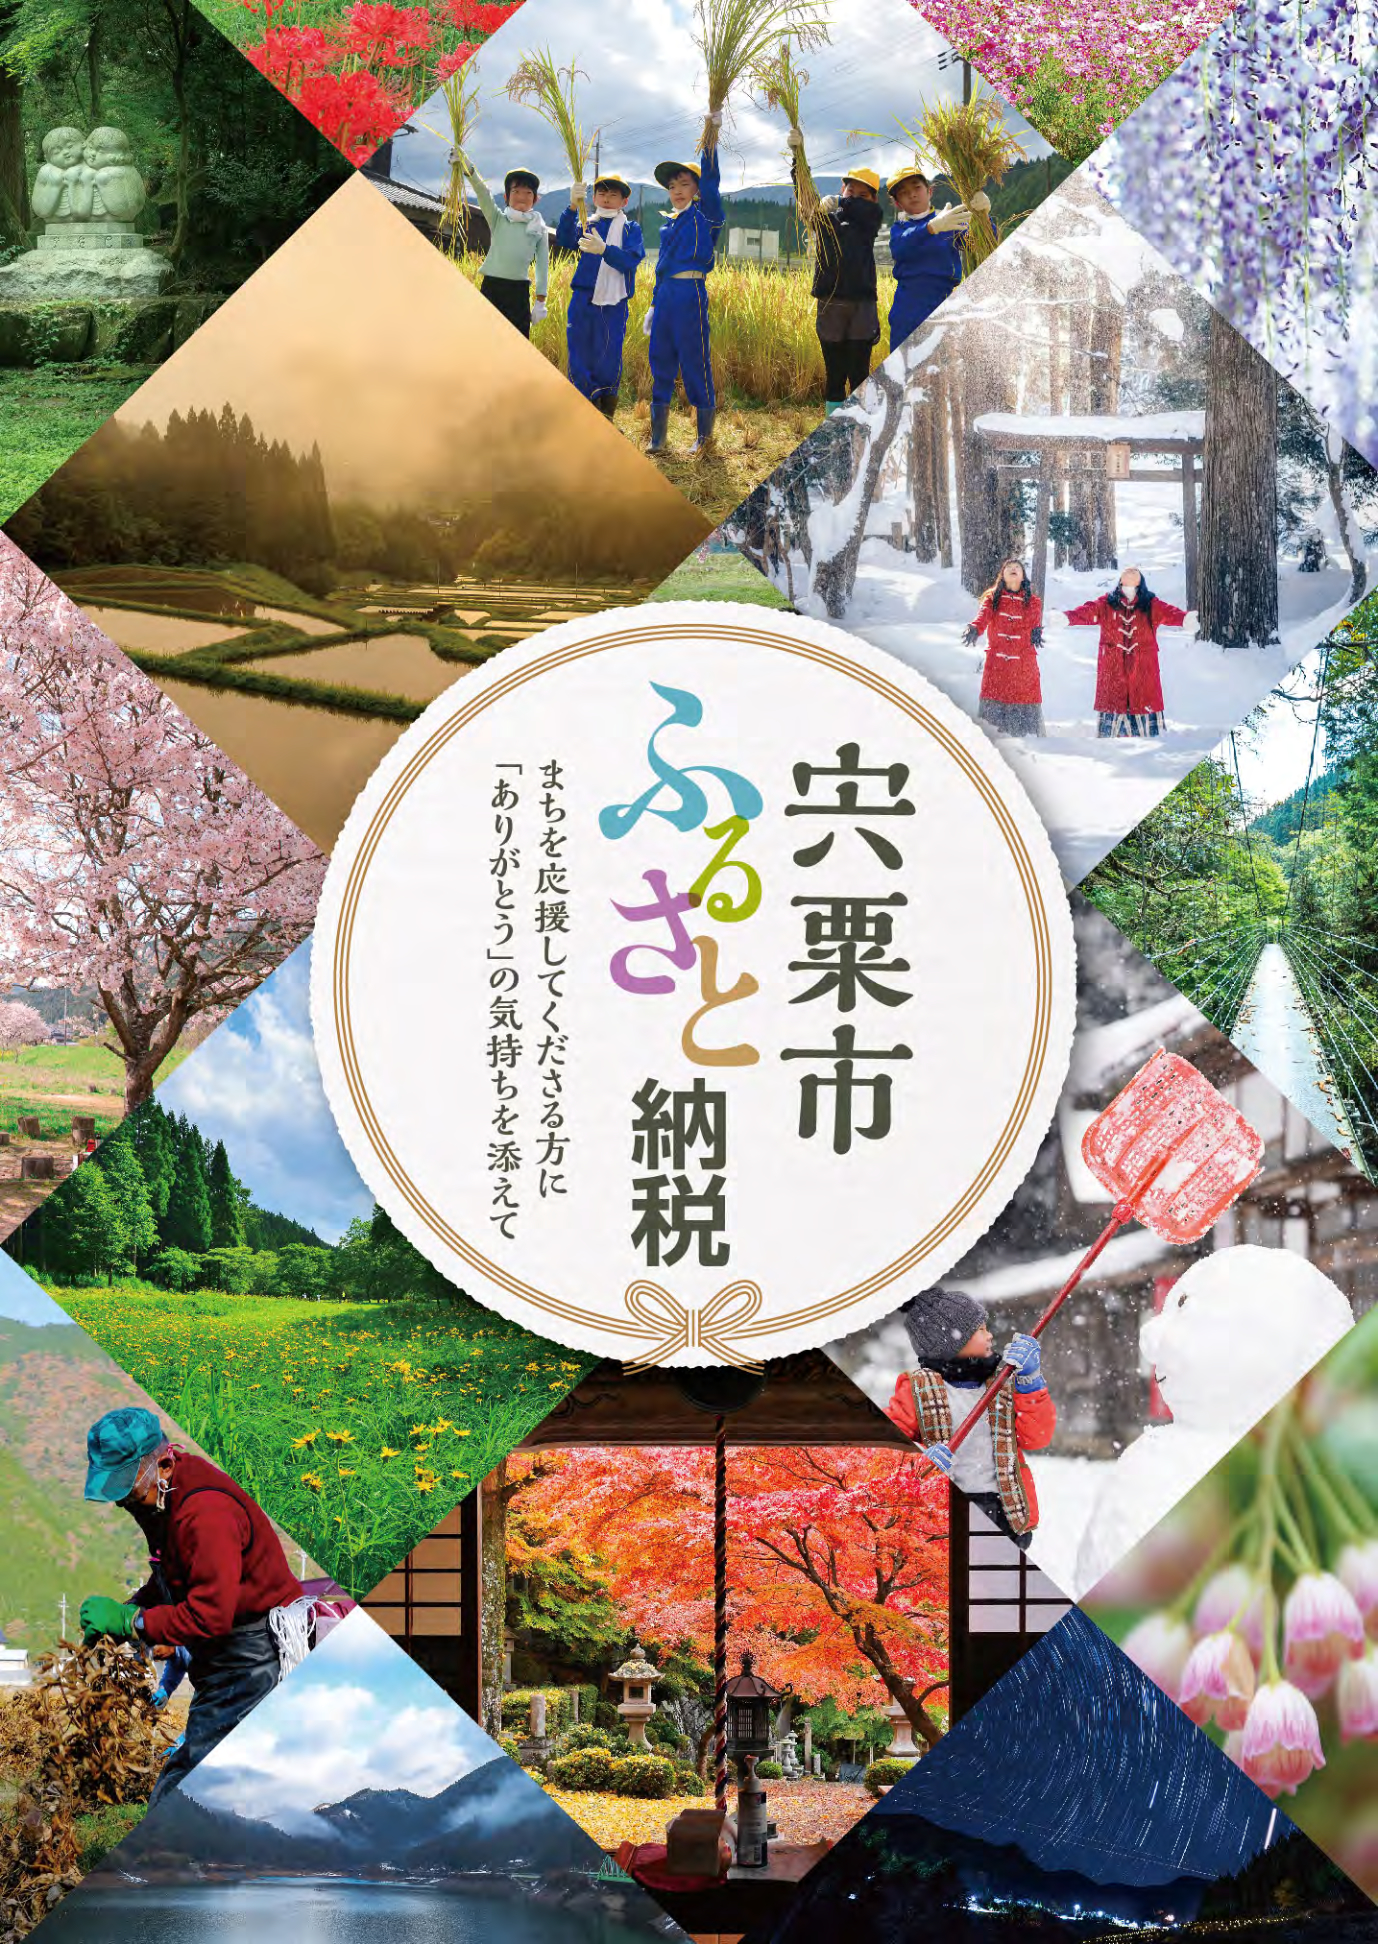 宍粟市のさまざまな人の営みや四季の風景写真を掲載したふるさと納税パンフレット表紙の画像